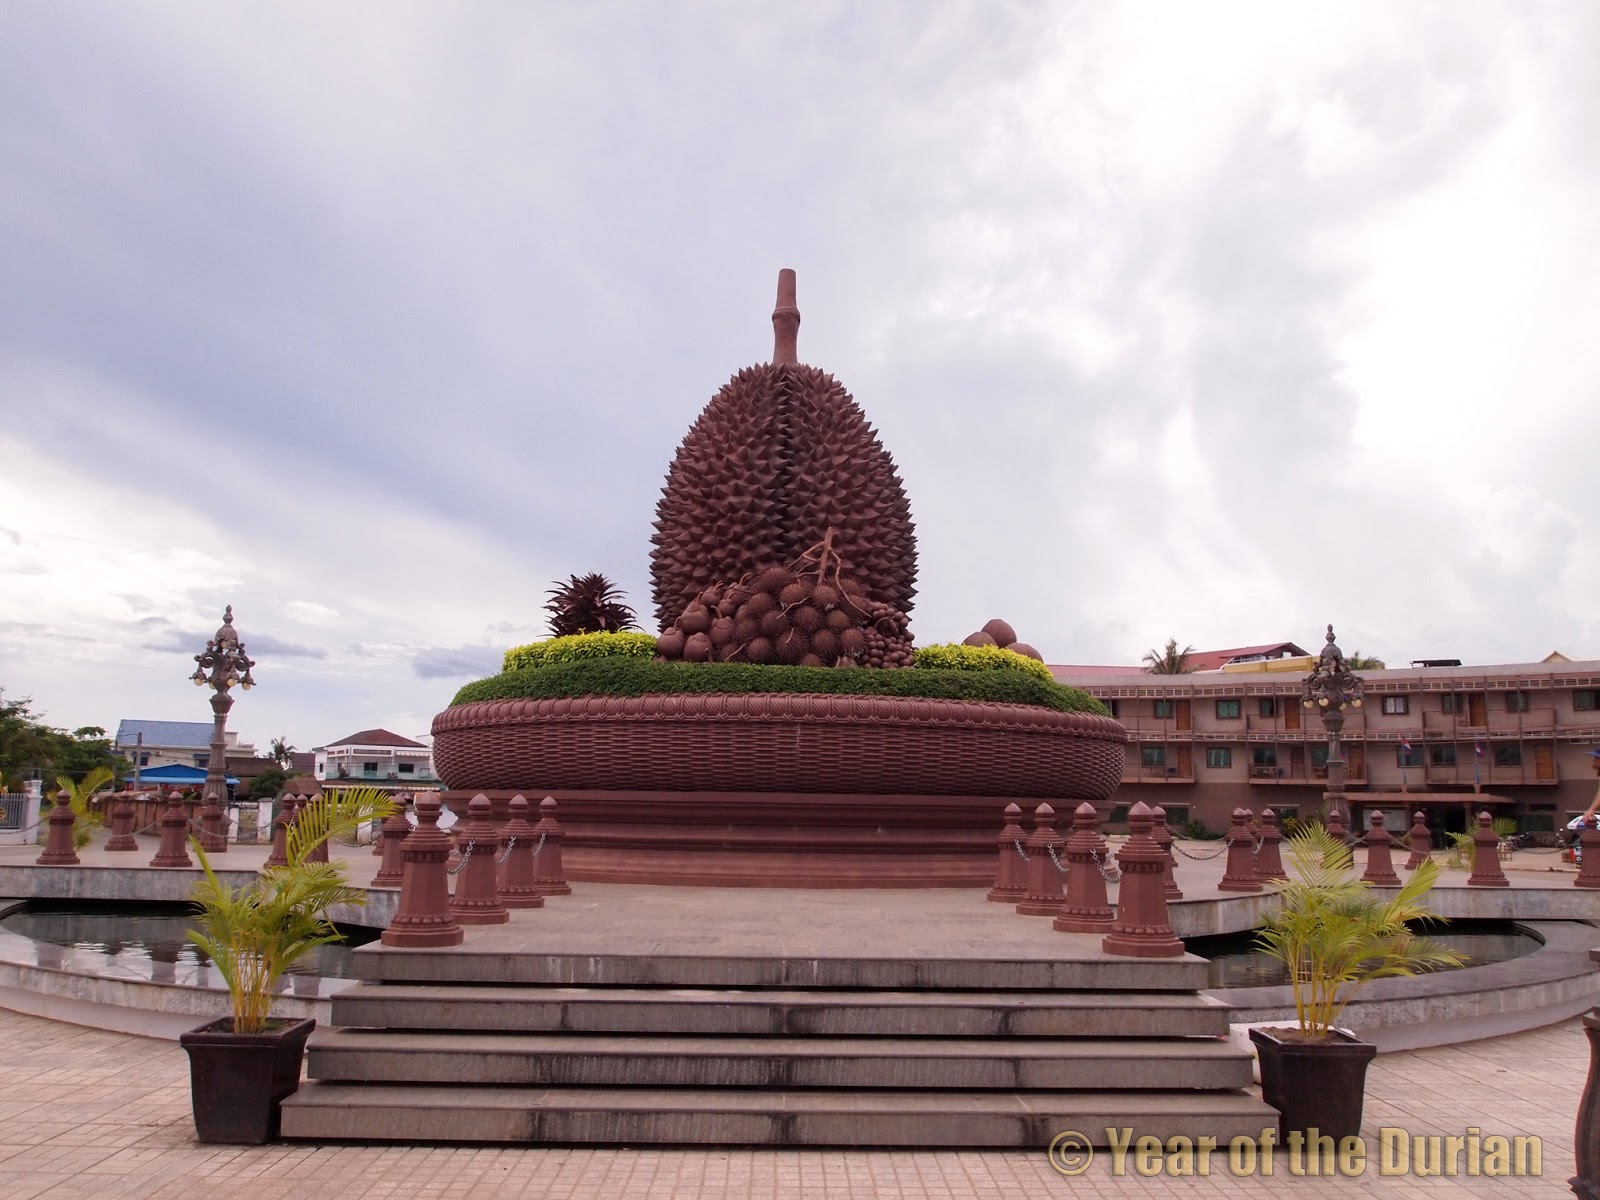 Kampot, Cambodia's Durian Capitol
